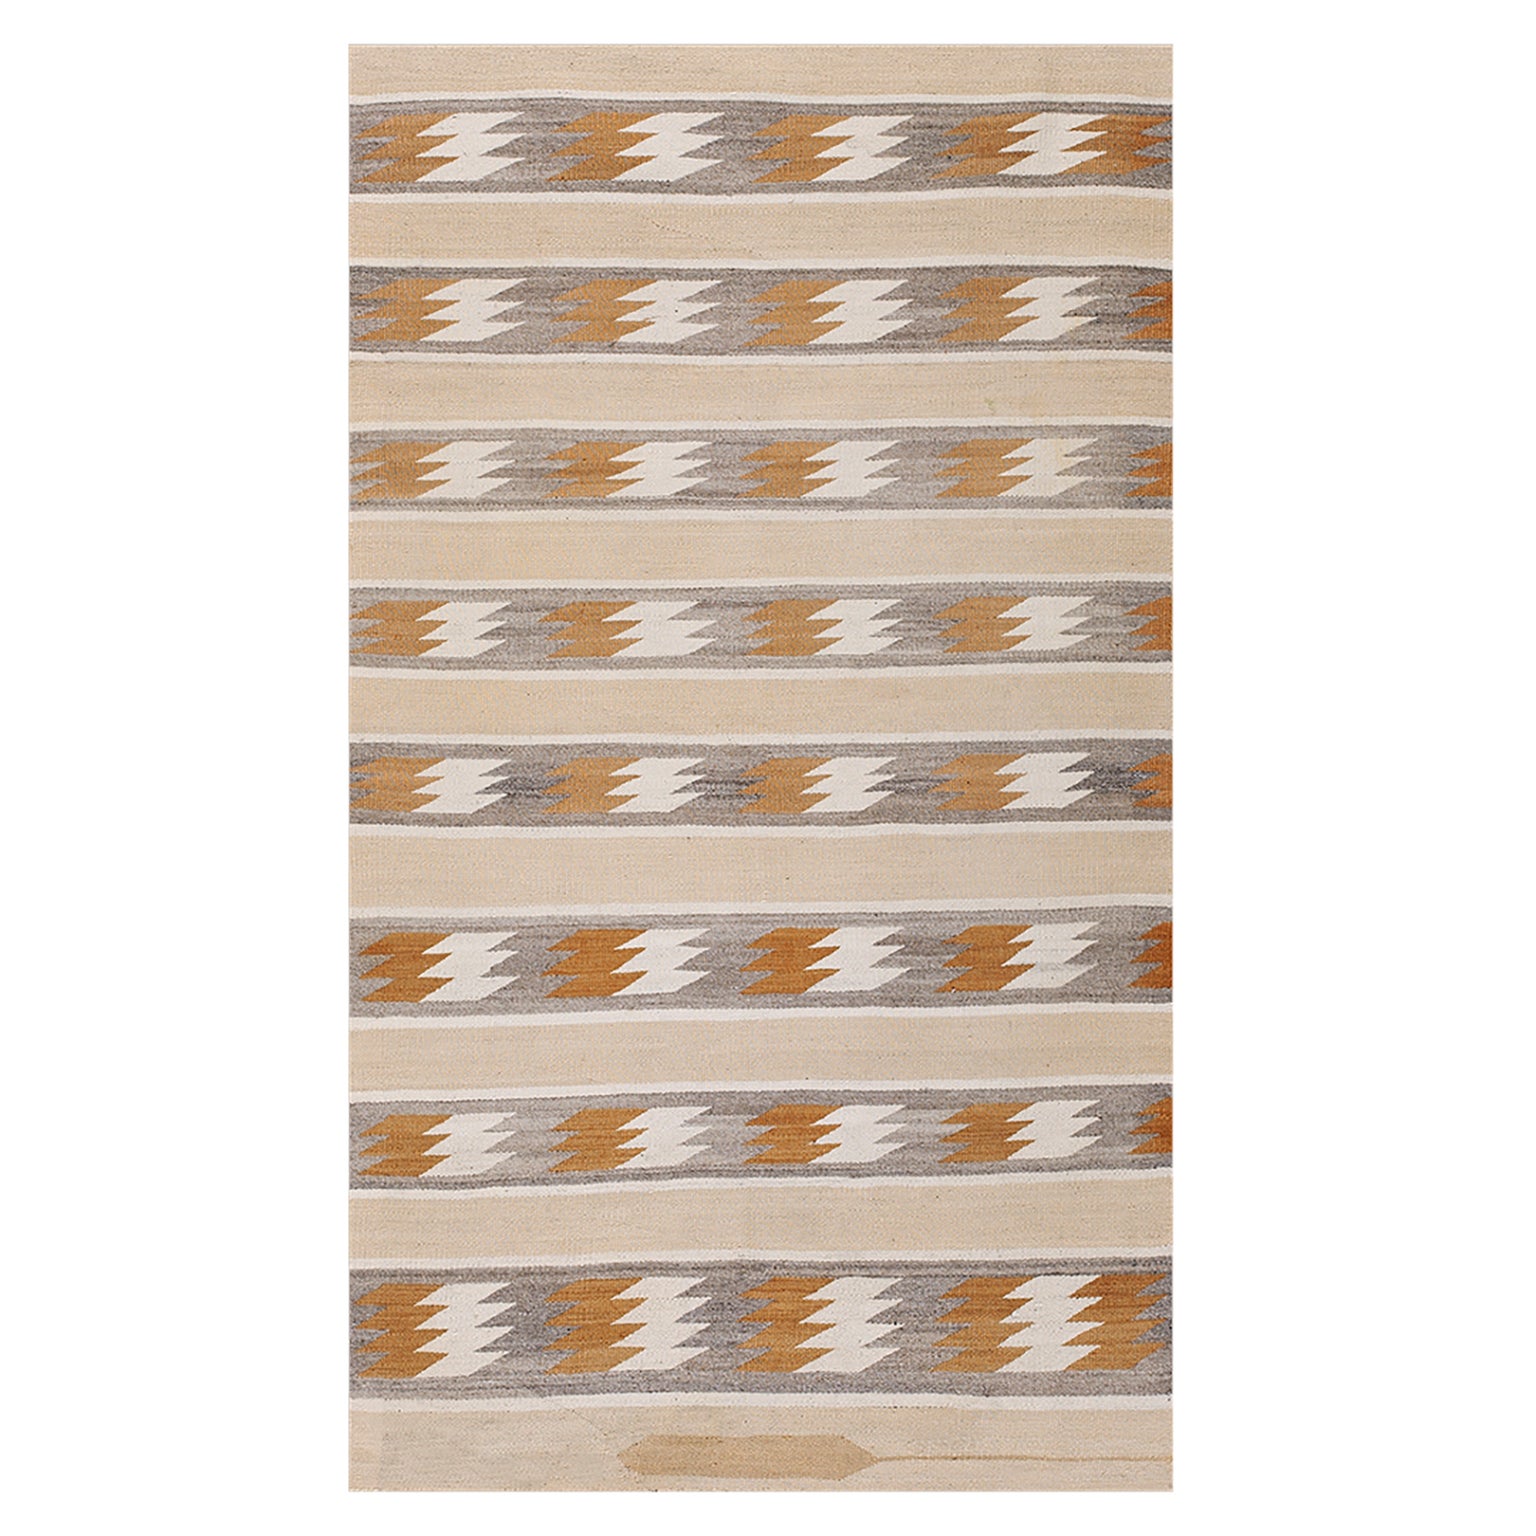 Amerikanischer Navajo-Teppich aus den 1930er Jahren ( 3'3 "x 5'6" - 99 x 167 ) 